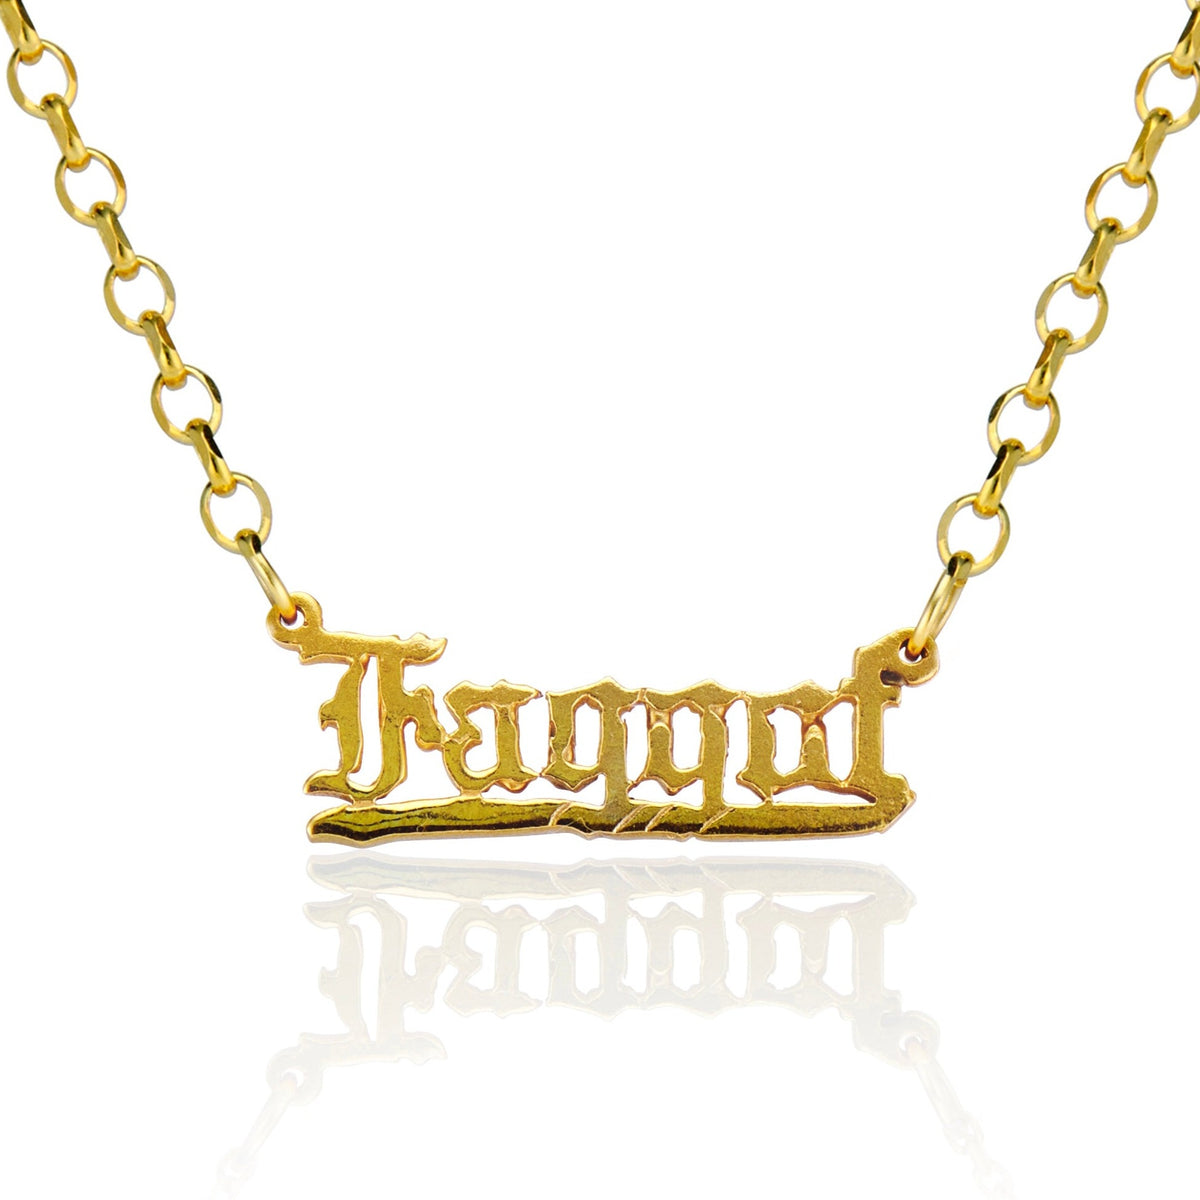 FAGGOT - GOLD